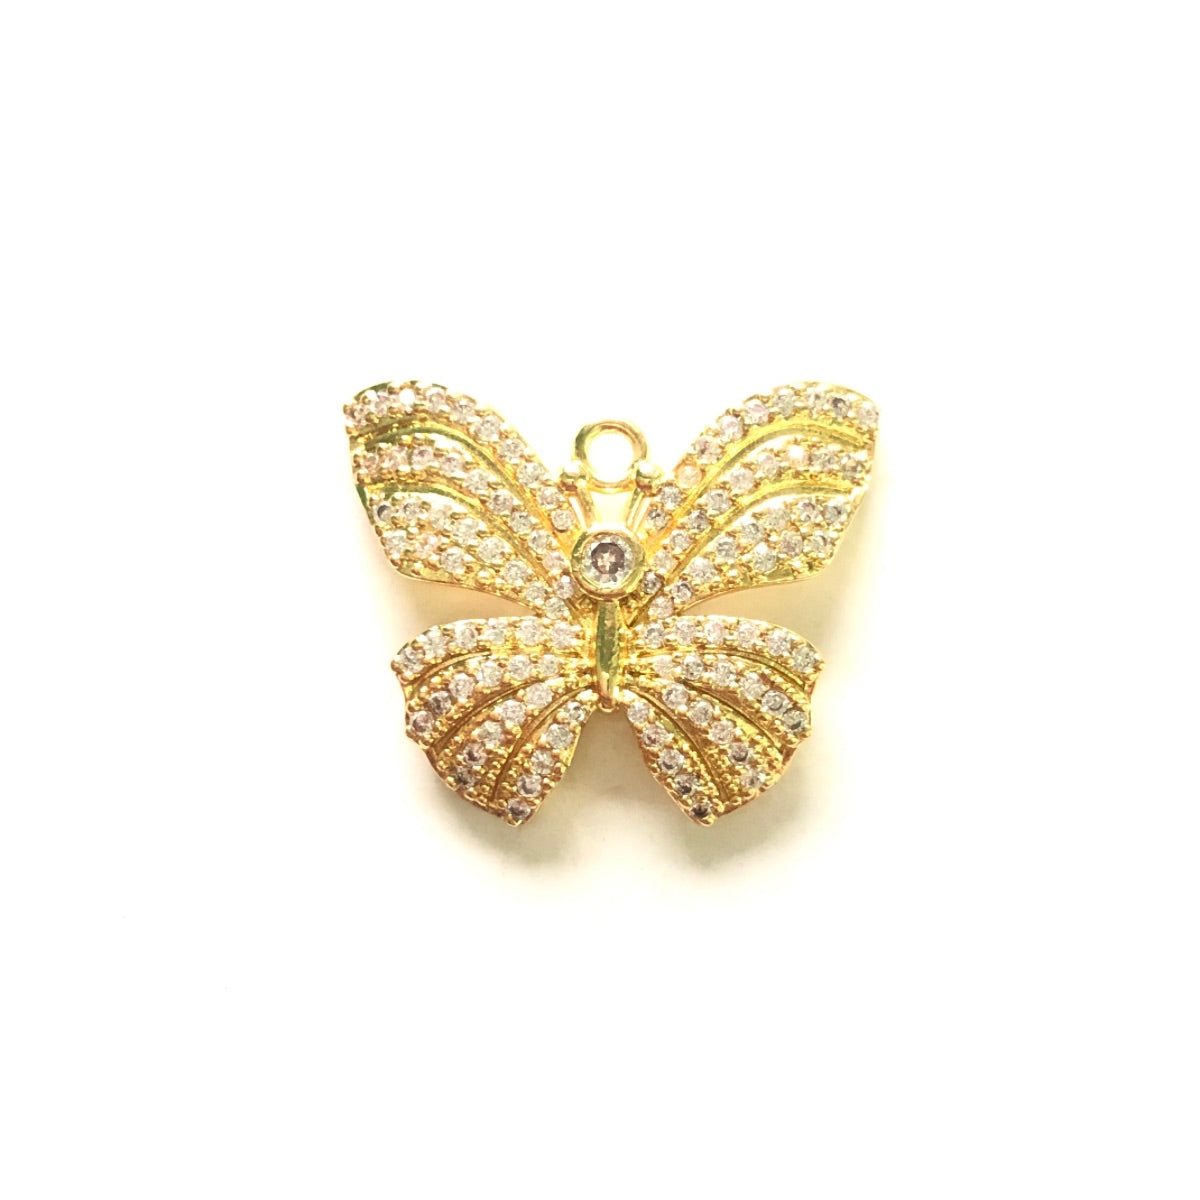 10pcs/lot 24.8*20.4mm CZ Paved Butterfly Charms Gold CZ Paved Charms Butterflies Charms Beads Beyond